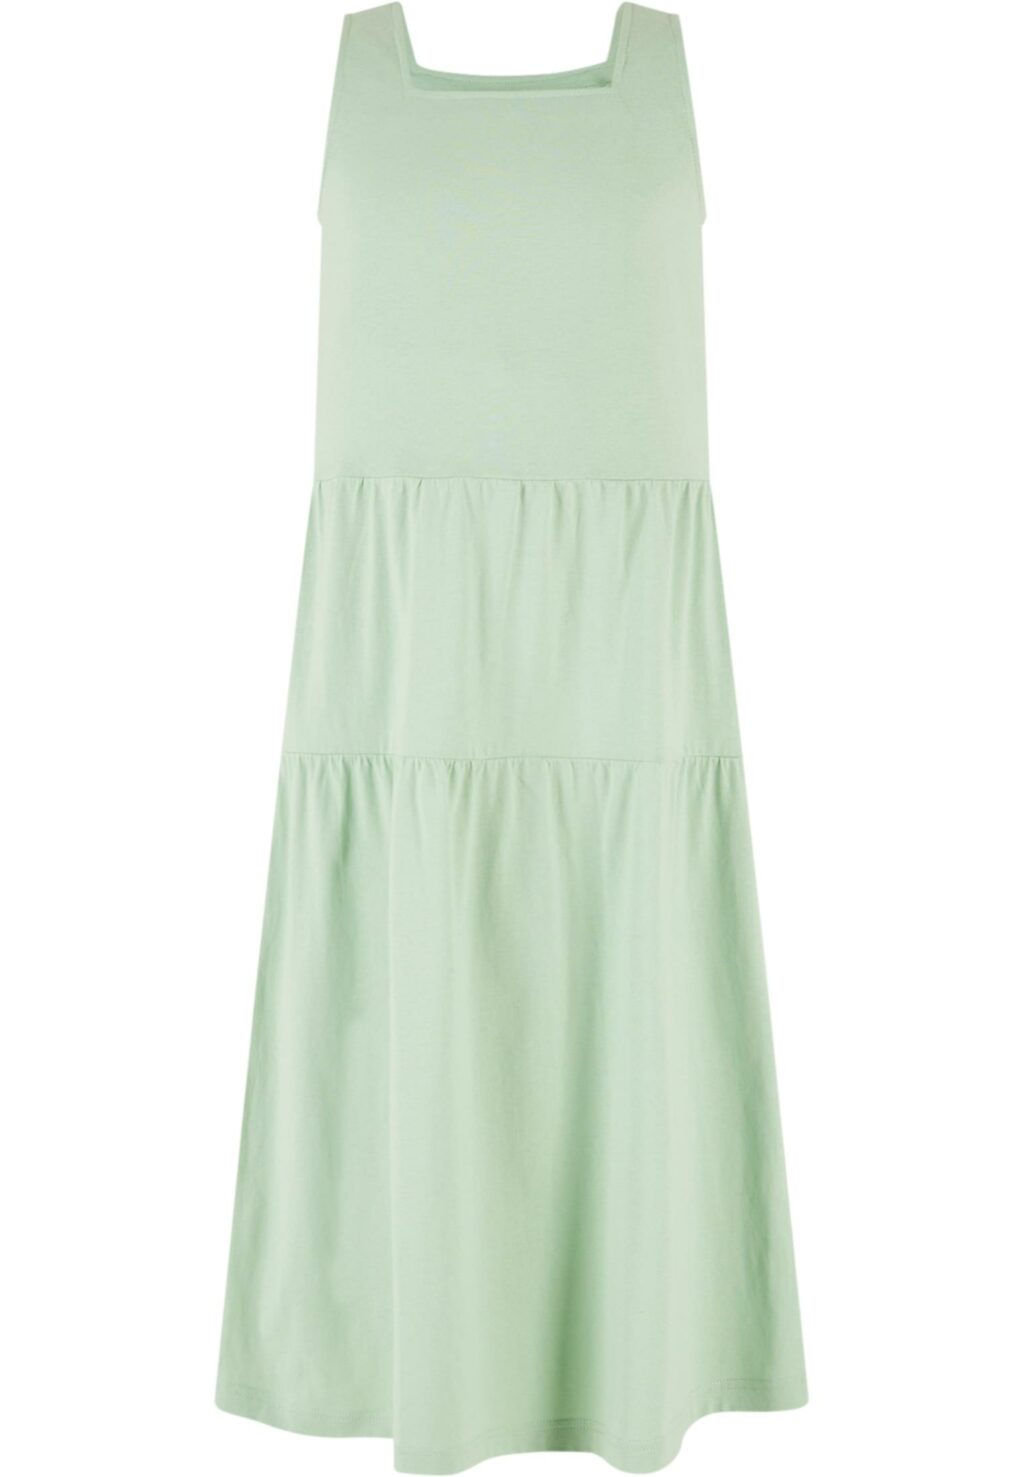 Girls 7/8 Length Valance Summer Dress vintagegreen UCK4784